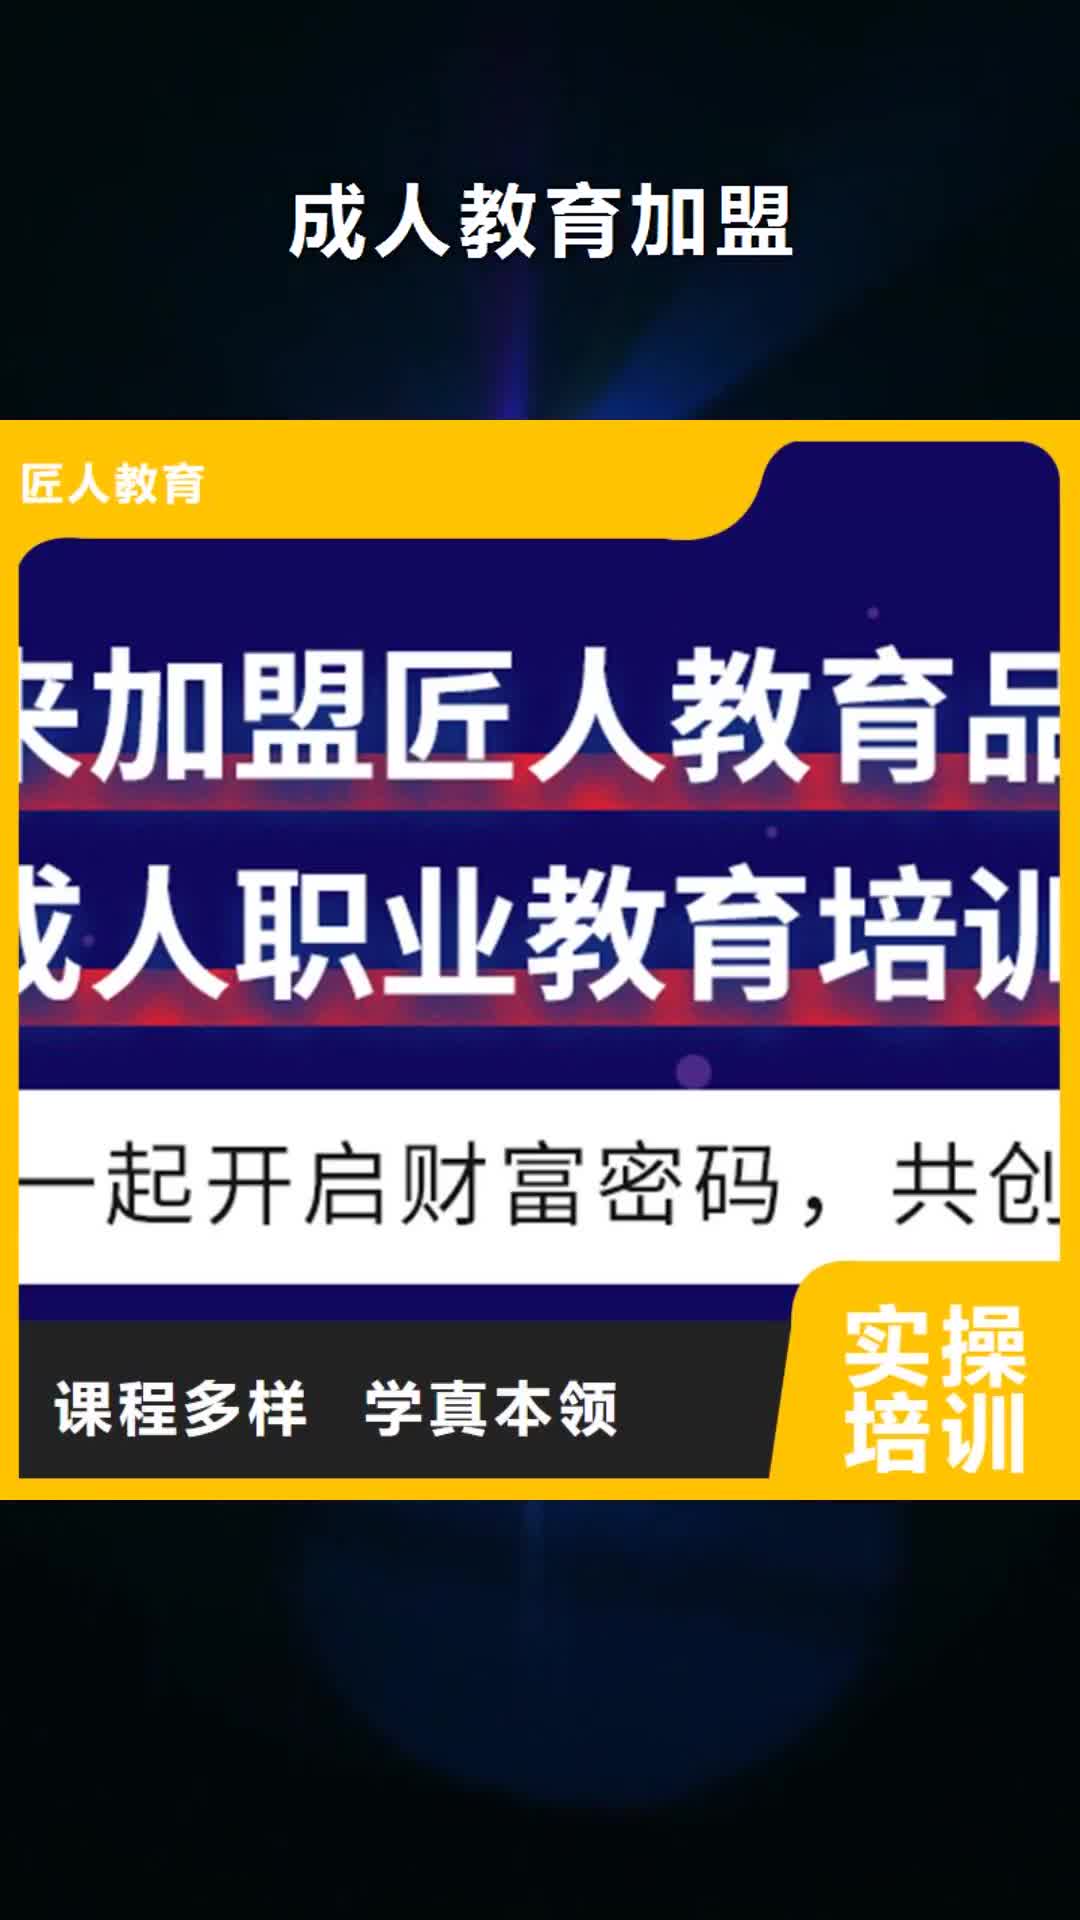 桂林【成人教育加盟】 职业教育加盟推荐就业